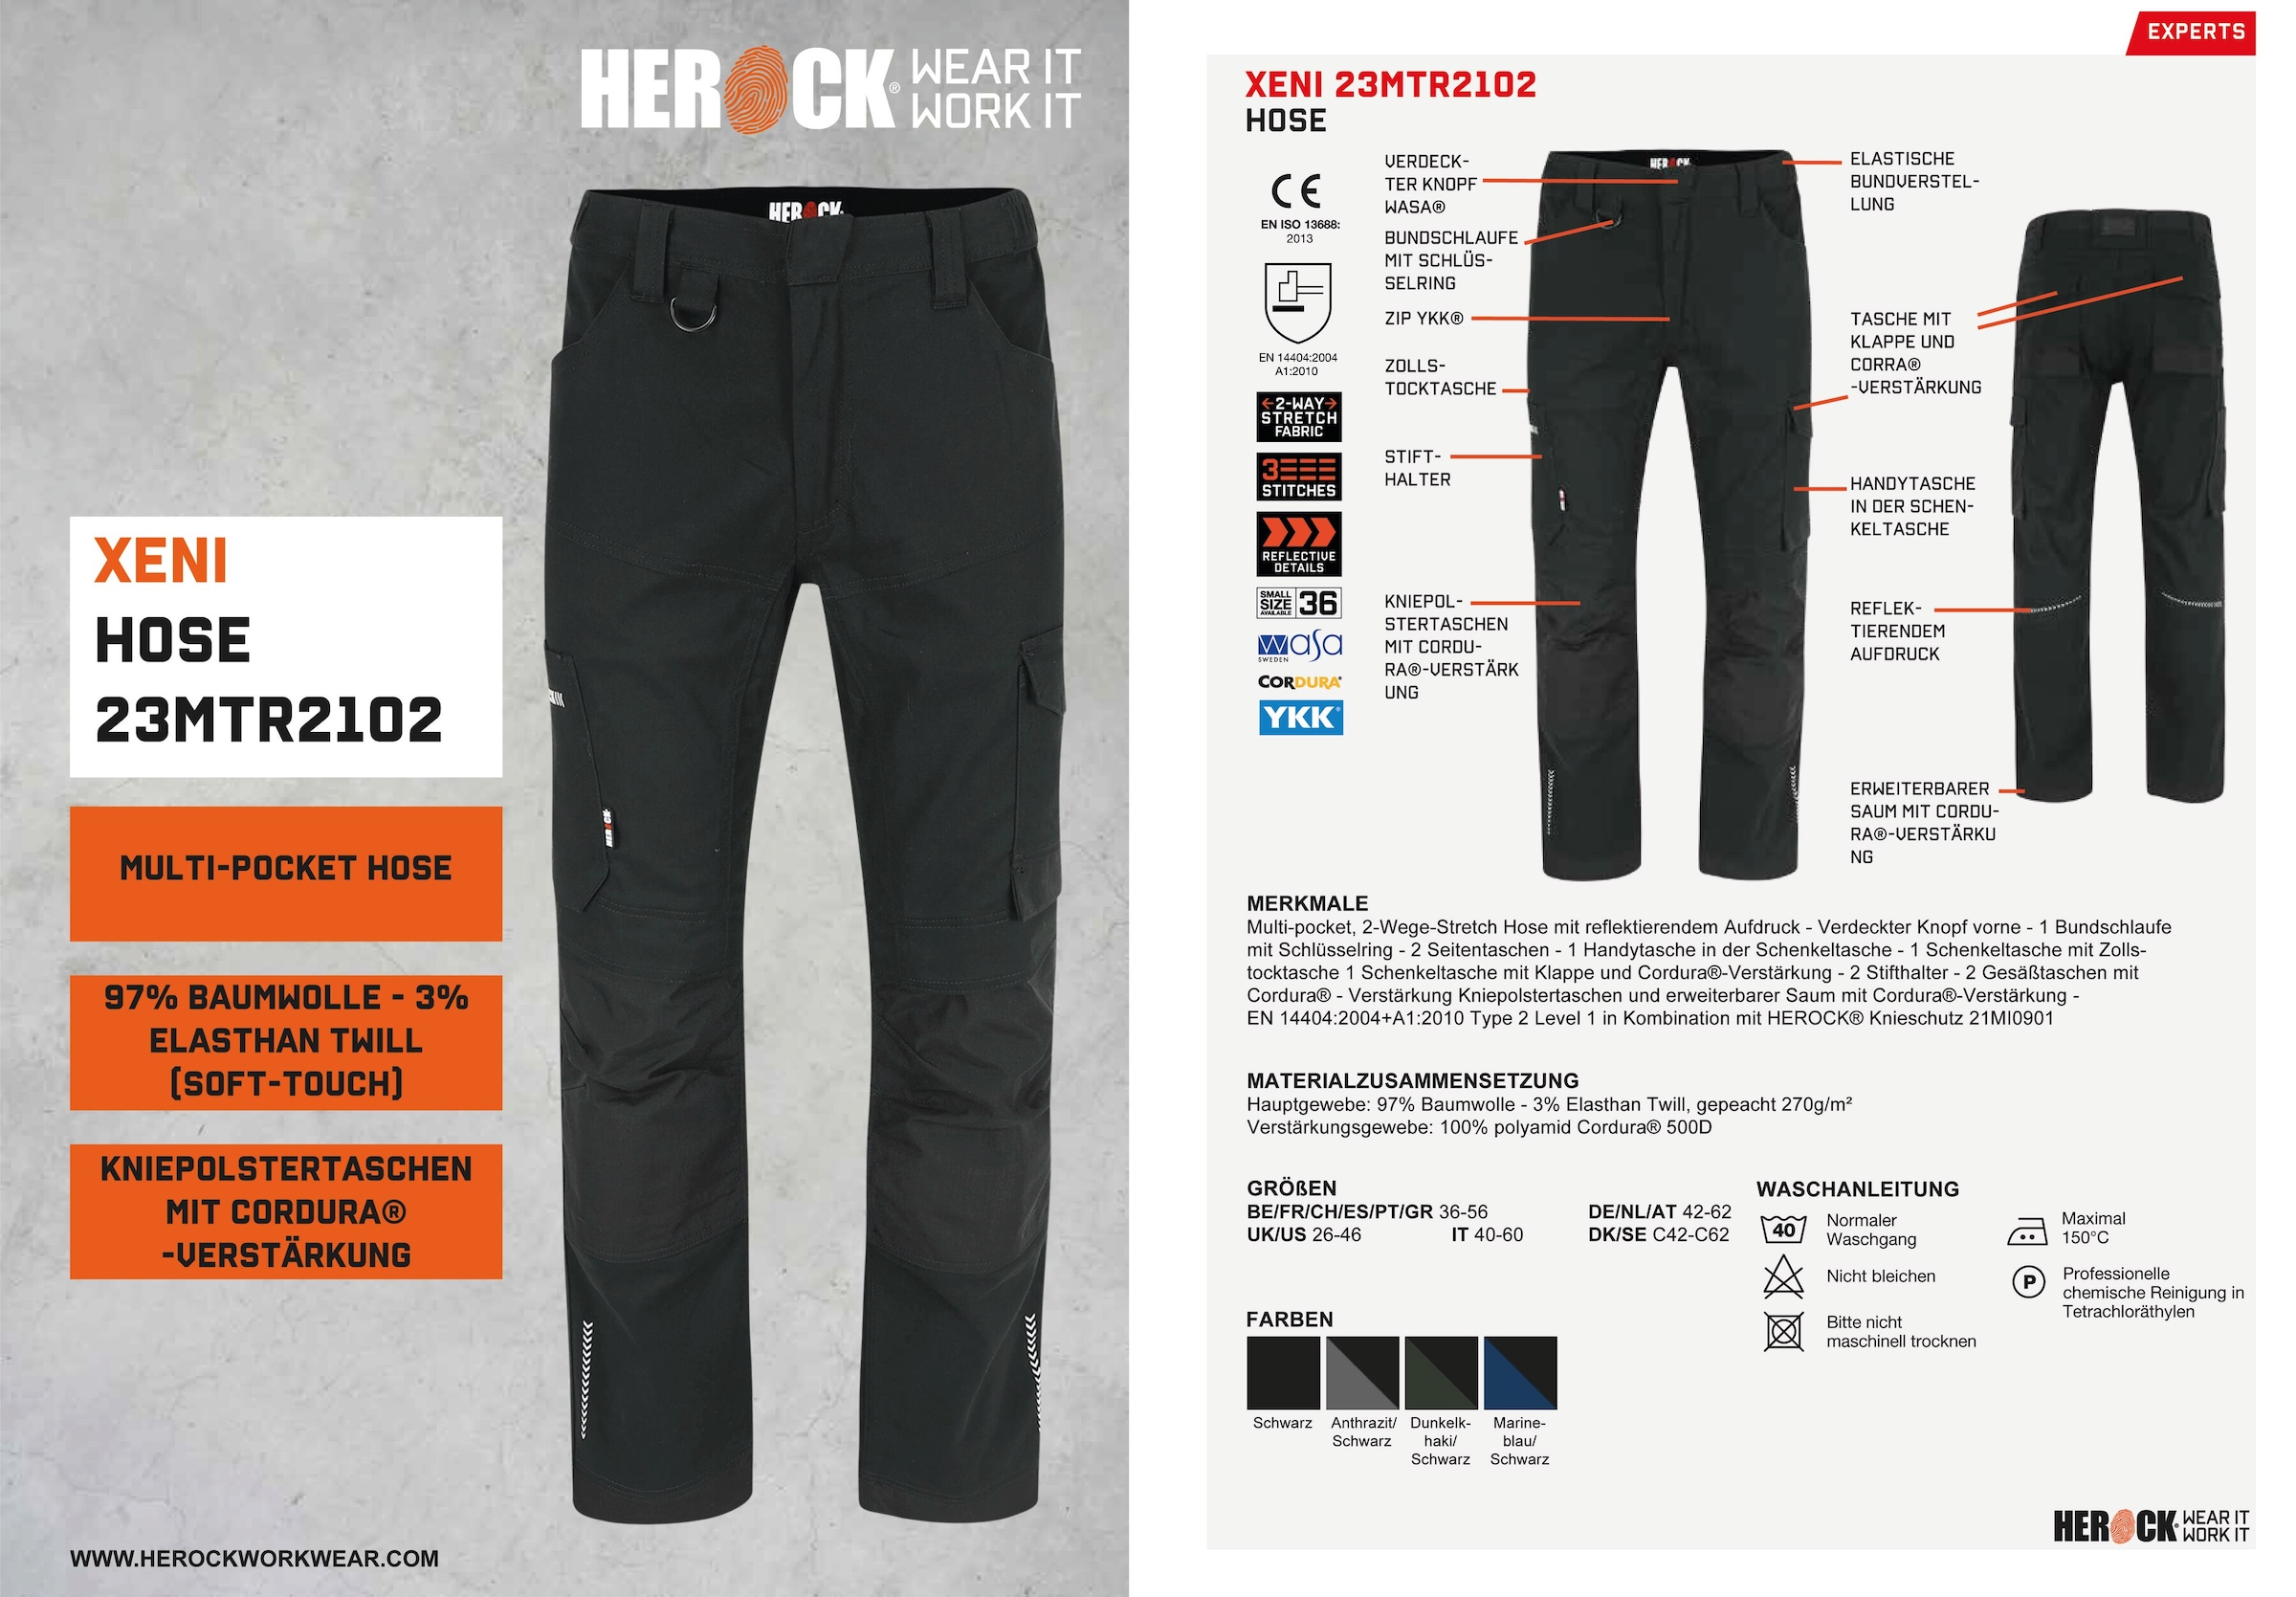 Herock Arbeitshose »XENI«, Multi-pocket, Stretch, wasserabweisend, Baumwolle,  weich und bequem online bestellen